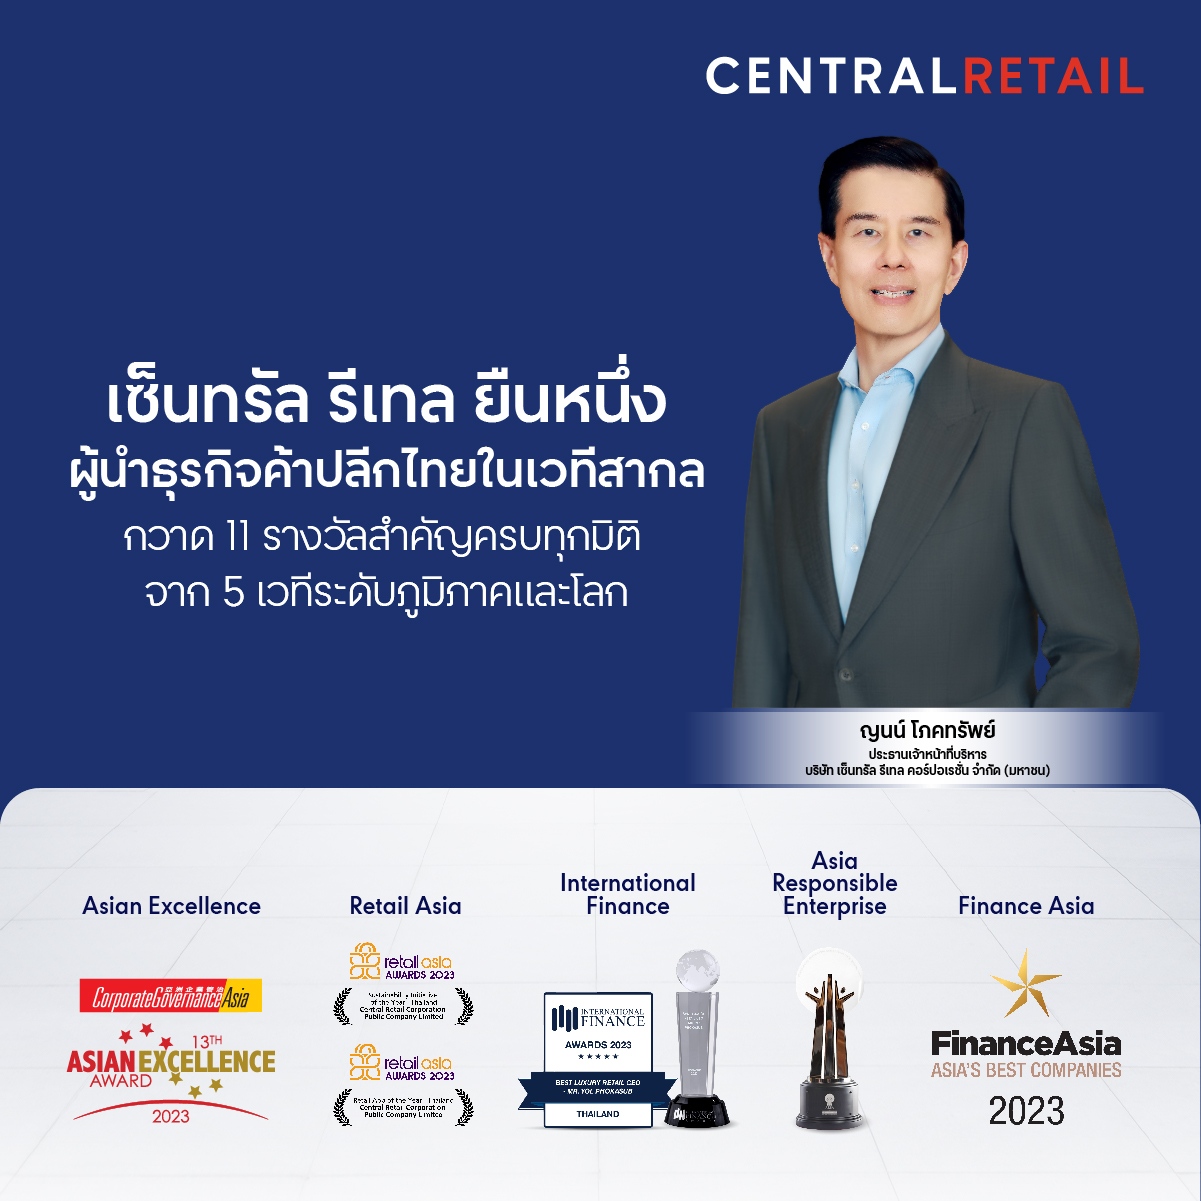 เซ็นทรัล รีเทล ยืนหนึ่งผู้นำธุรกิจค้าปลีกไทยในเวทีสากล กวาด 11 รางวัลสำคัญครบทุกมิติ จาก 5 เวทีระดับภูมิภาคและโลก